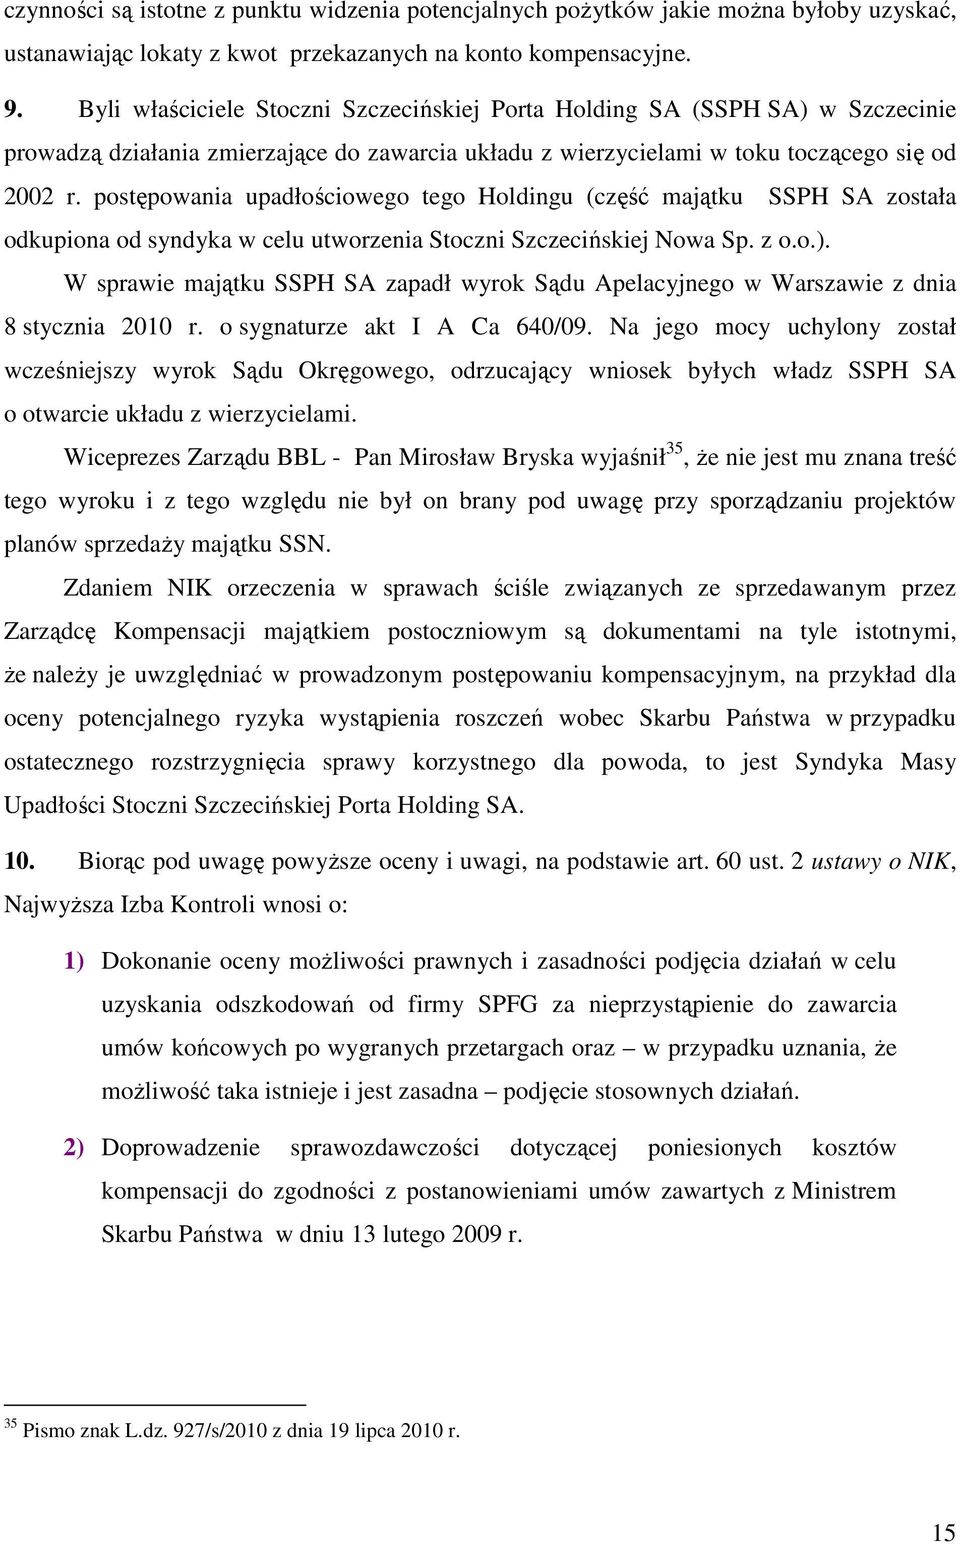 postępowania upadłościowego tego Holdingu (część majątku SSPH SA została odkupiona od syndyka w celu utworzenia Stoczni Szczecińskiej Nowa Sp. z o.o.).